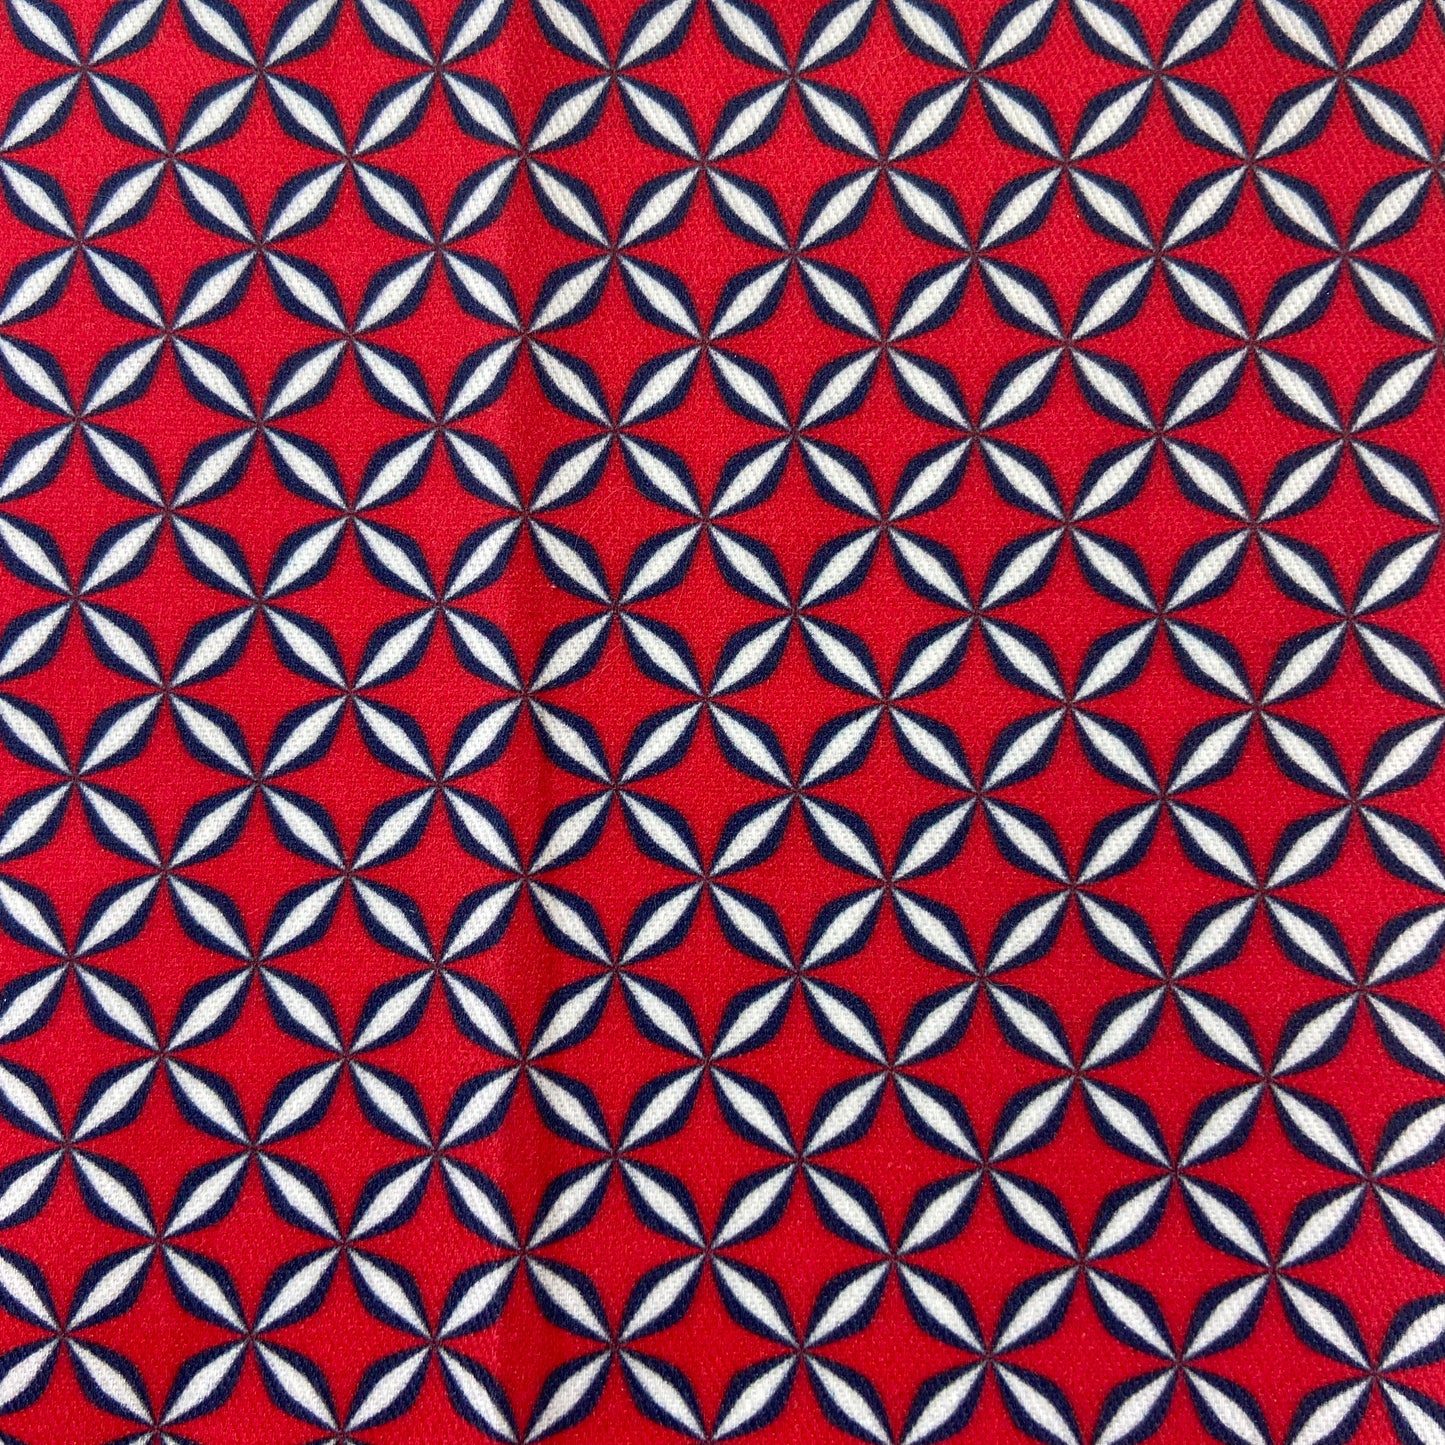 Sergé de coton imprimé motif vintage rétro années 60 blanc et marine sur fond rouge classique géométrique années 50 mid-century 